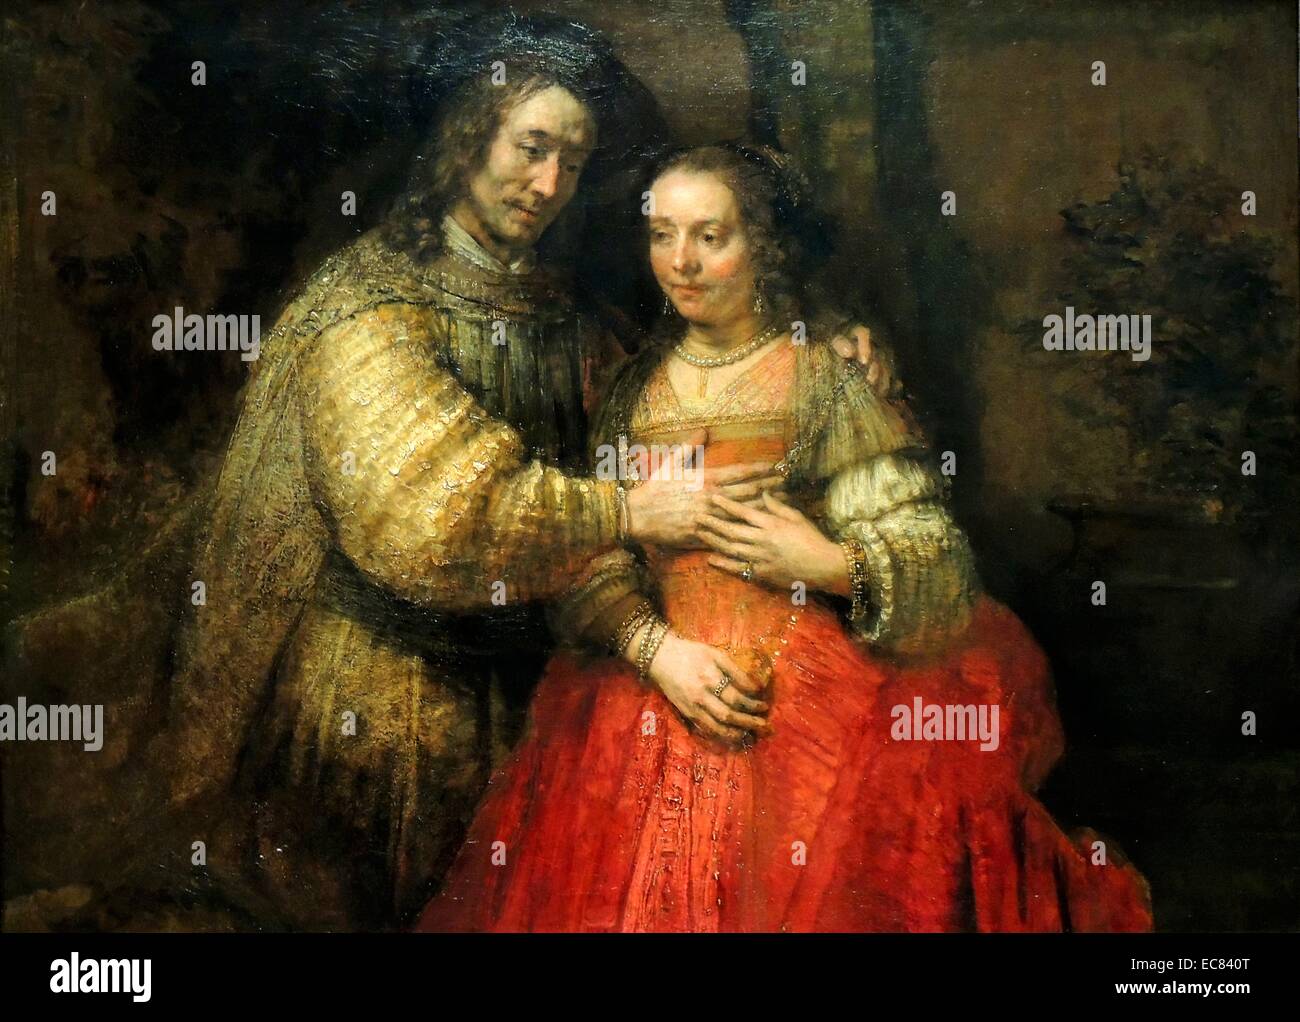 La novia judía es una pintura de Rembrandt, pintada alrededor de 1667. La pintura obtuvo su nombre en los comienzos del siglo XIX, cuando un coleccionista de arte de Amsterdam identificó el tema como el de un padre judío otorgando un collar a su hija el día de su boda. Foto de stock